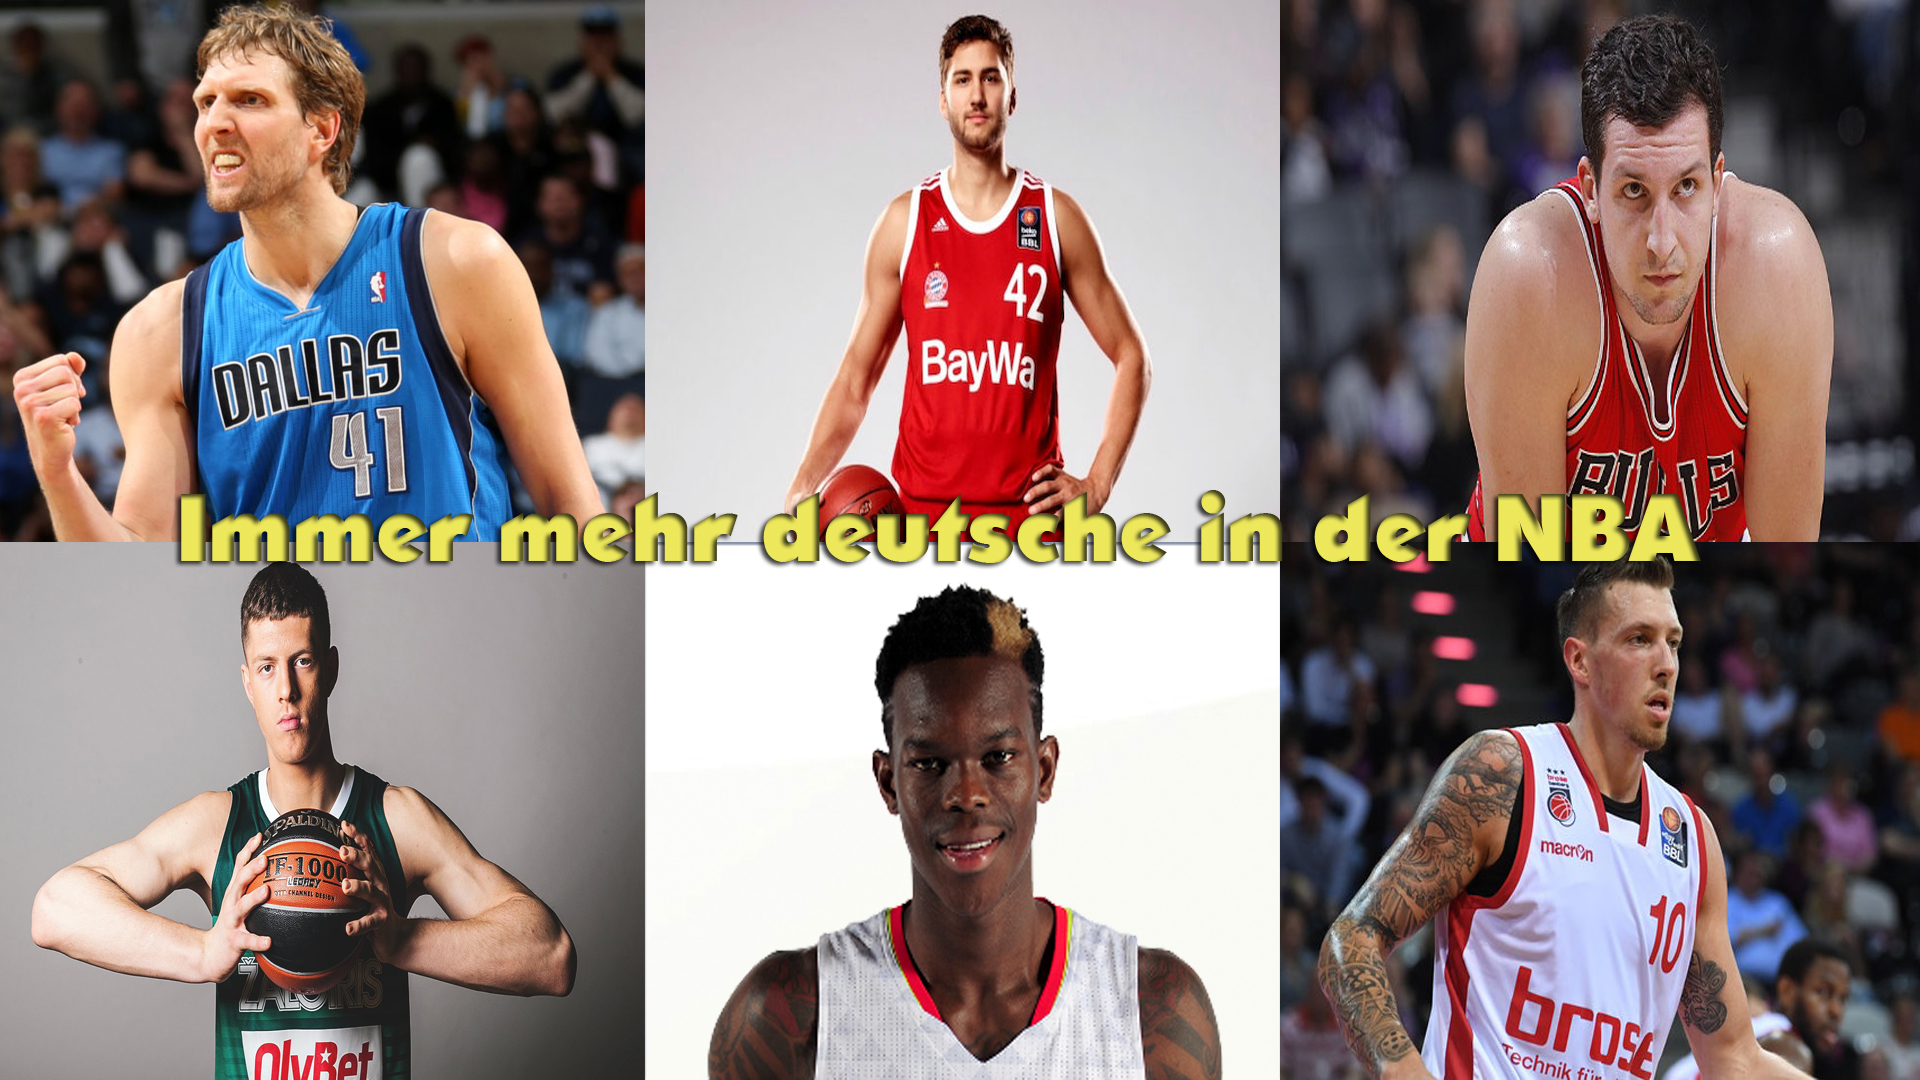 Immer mehr deutsche in der NBA